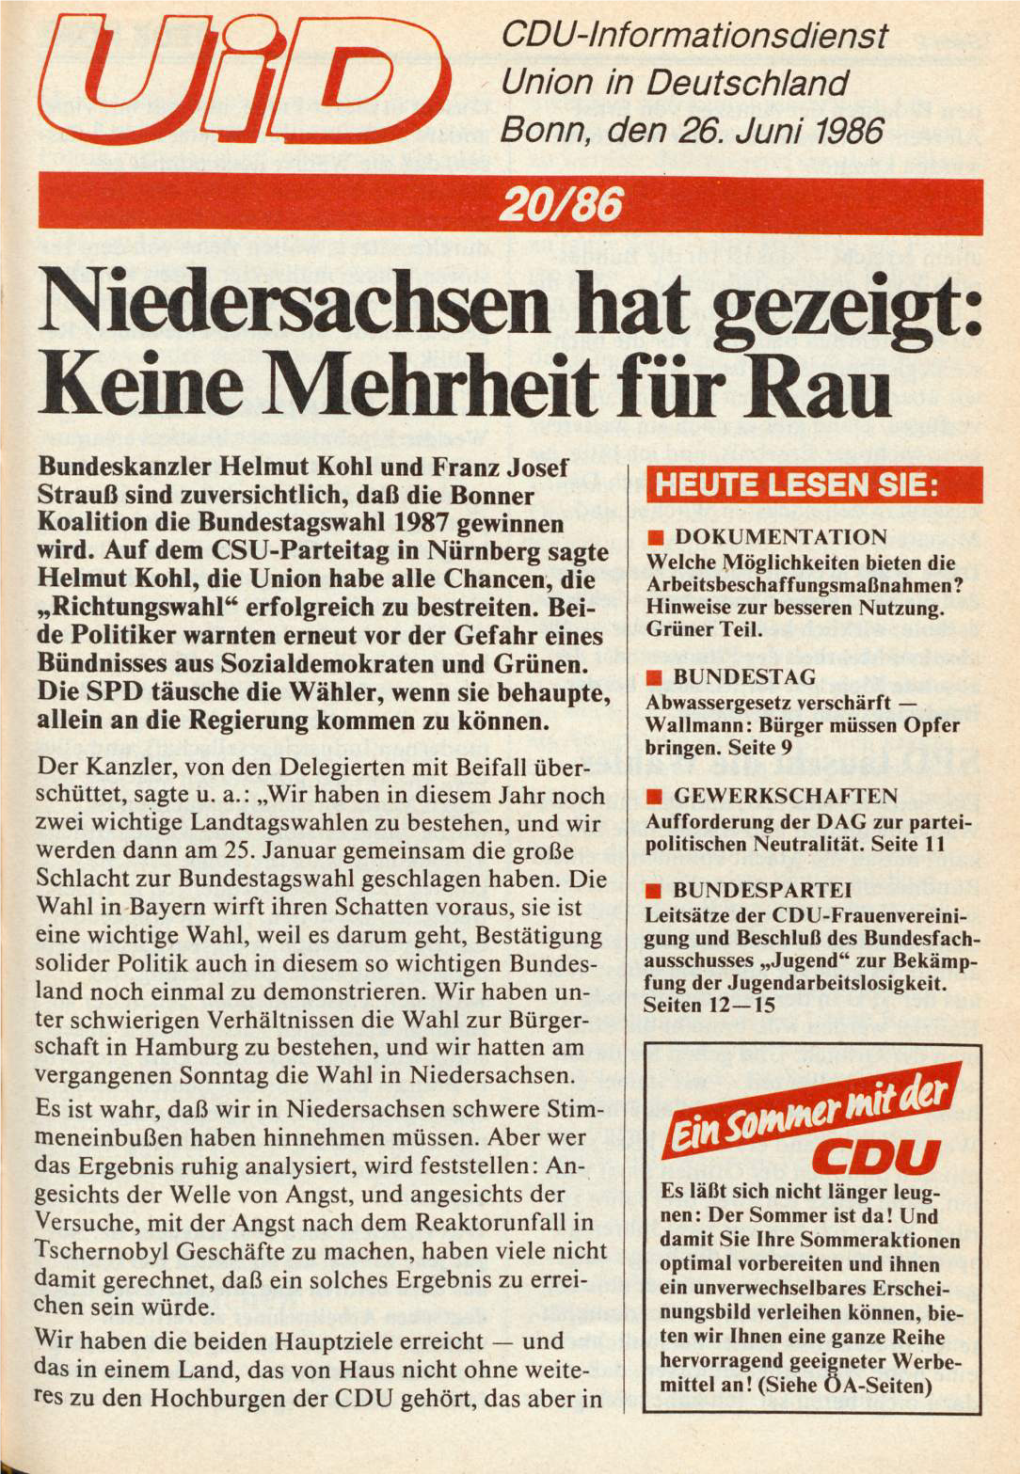 UID 1986 Nr. 20, Union in Deutschland